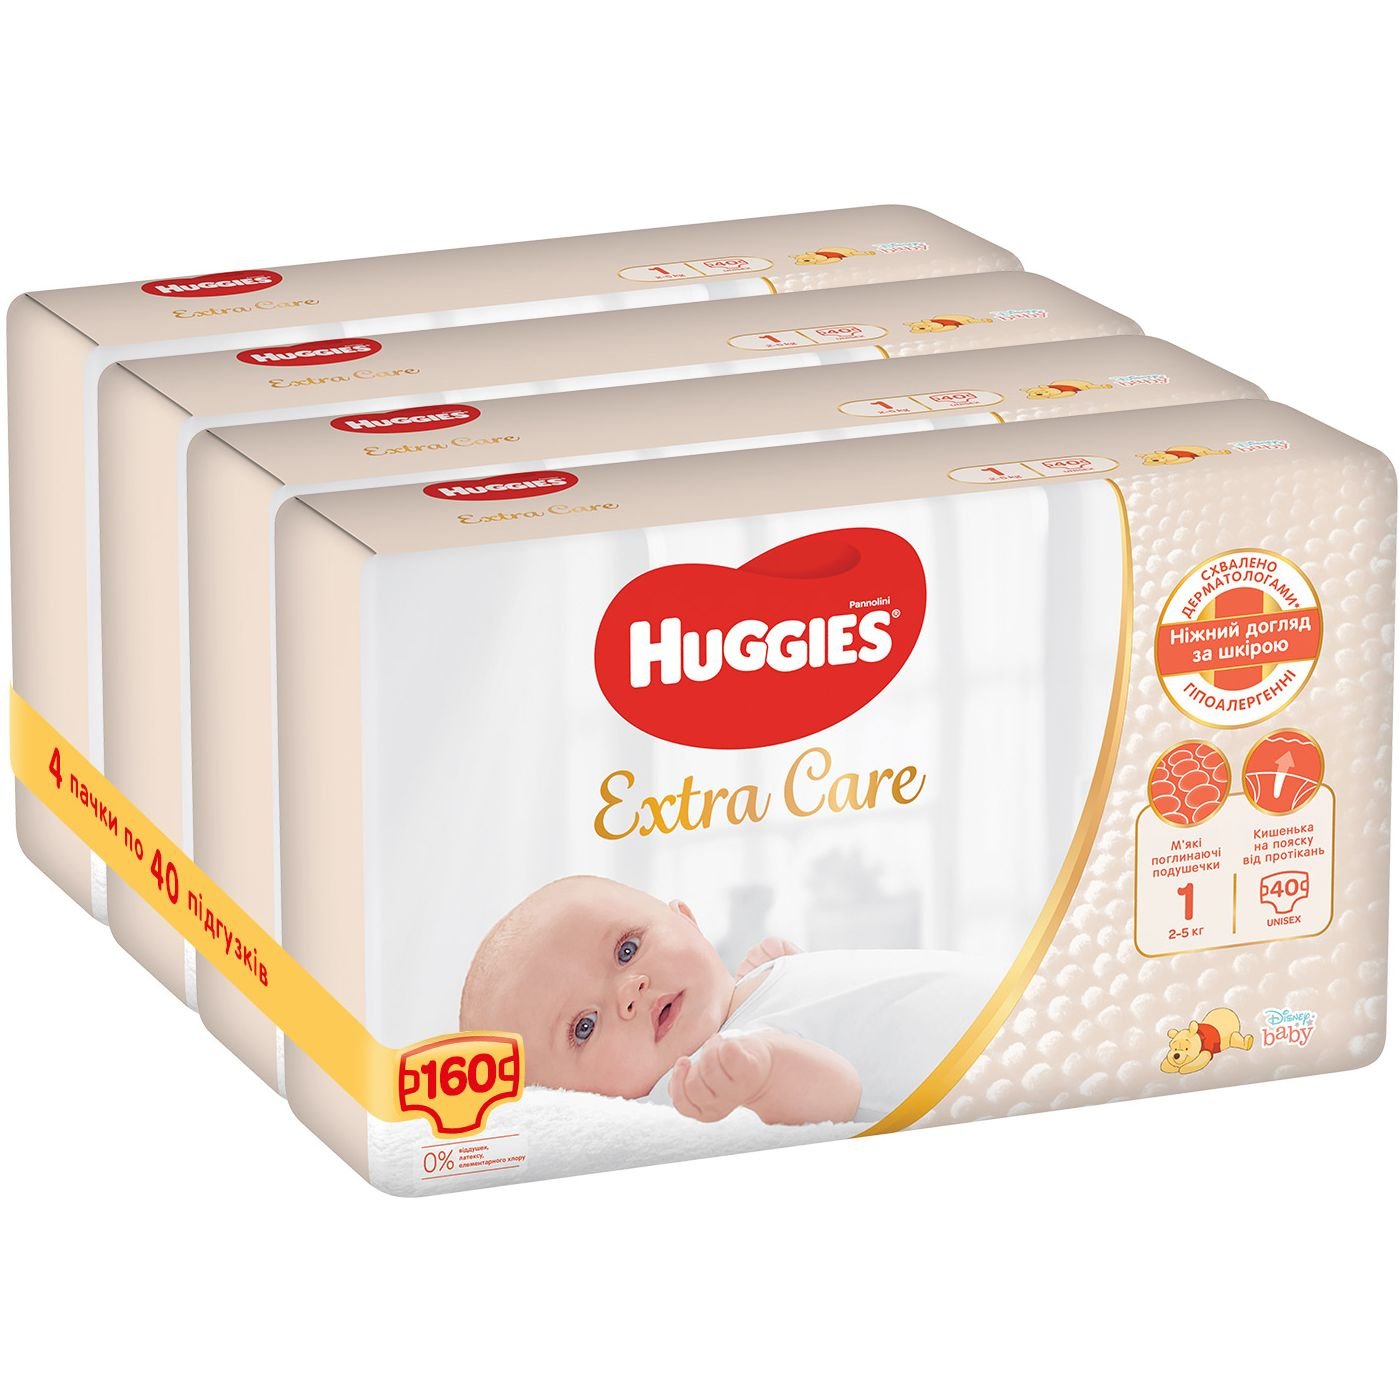 Підгузки Huggies Extra Care Newborn 1 (2-5 кг), 160 шт. (4 уп. по 40 шт.) - фото 2